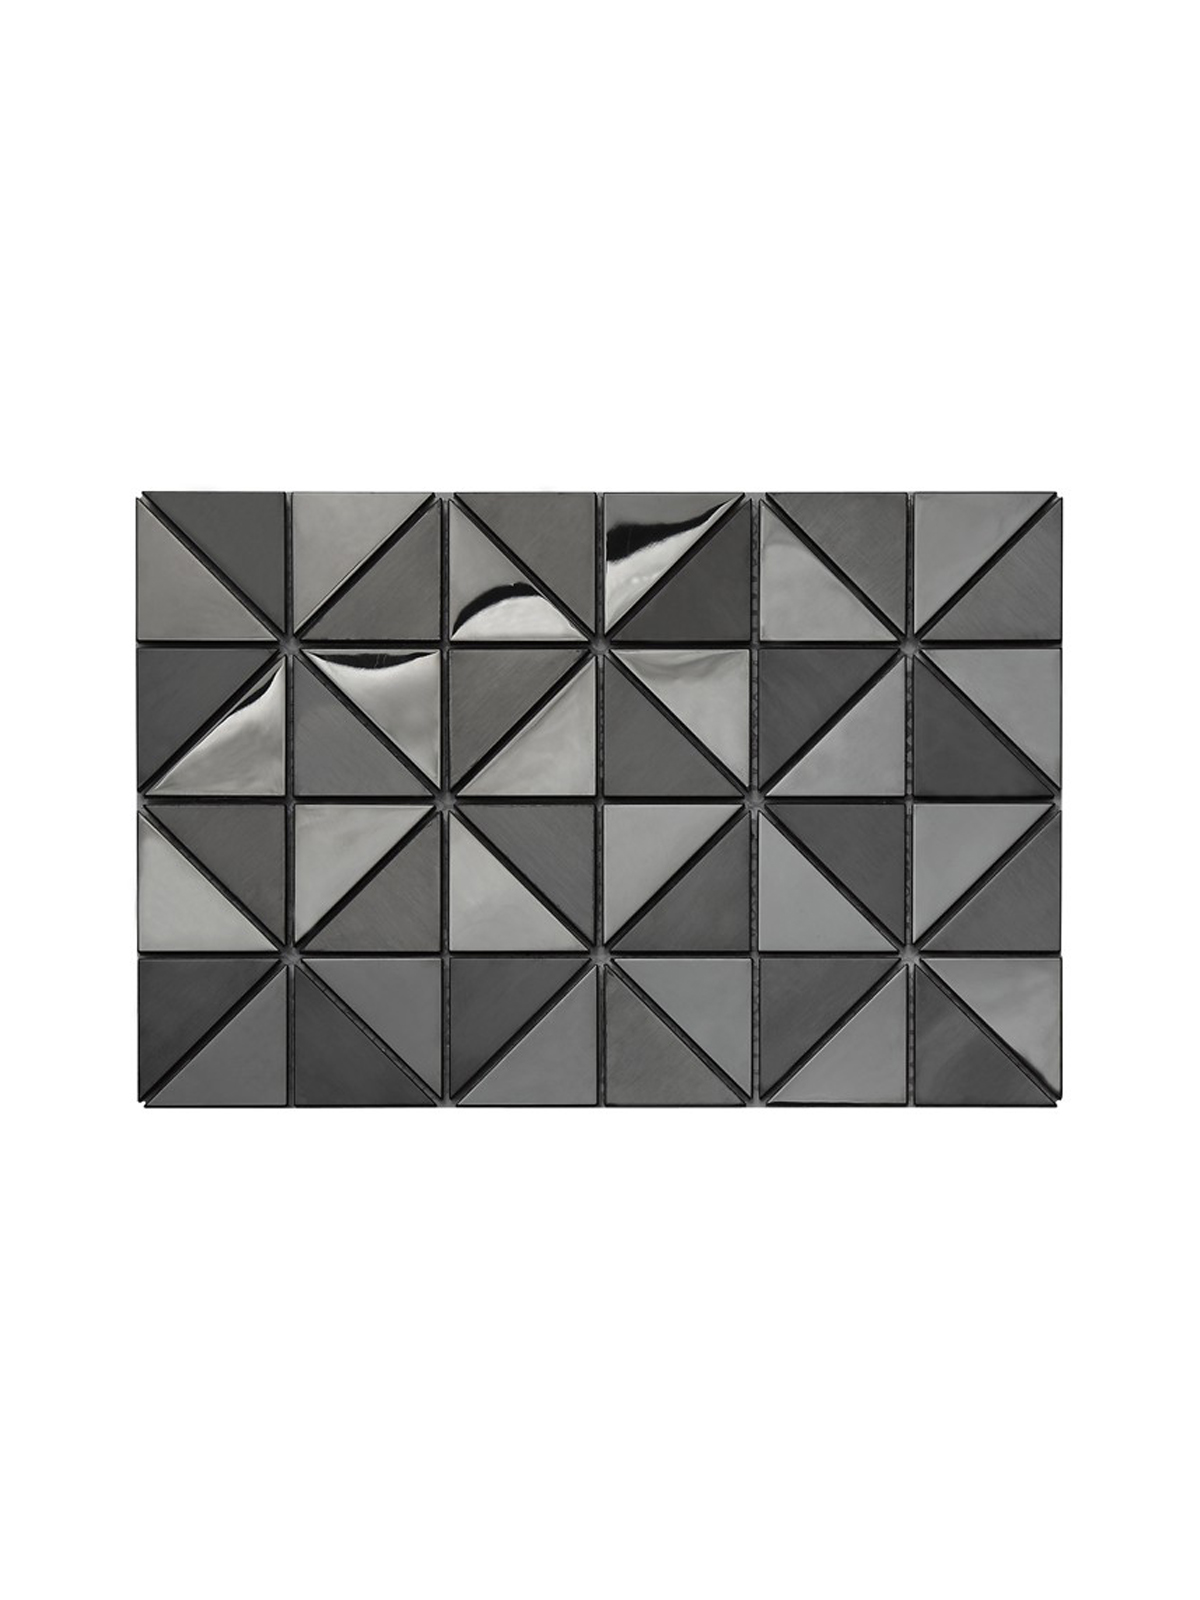 名玛汇黑色三角形金属不锈钢马赛克瓷砖卫生间餐厅吧台墙砖背景墙 - 图2